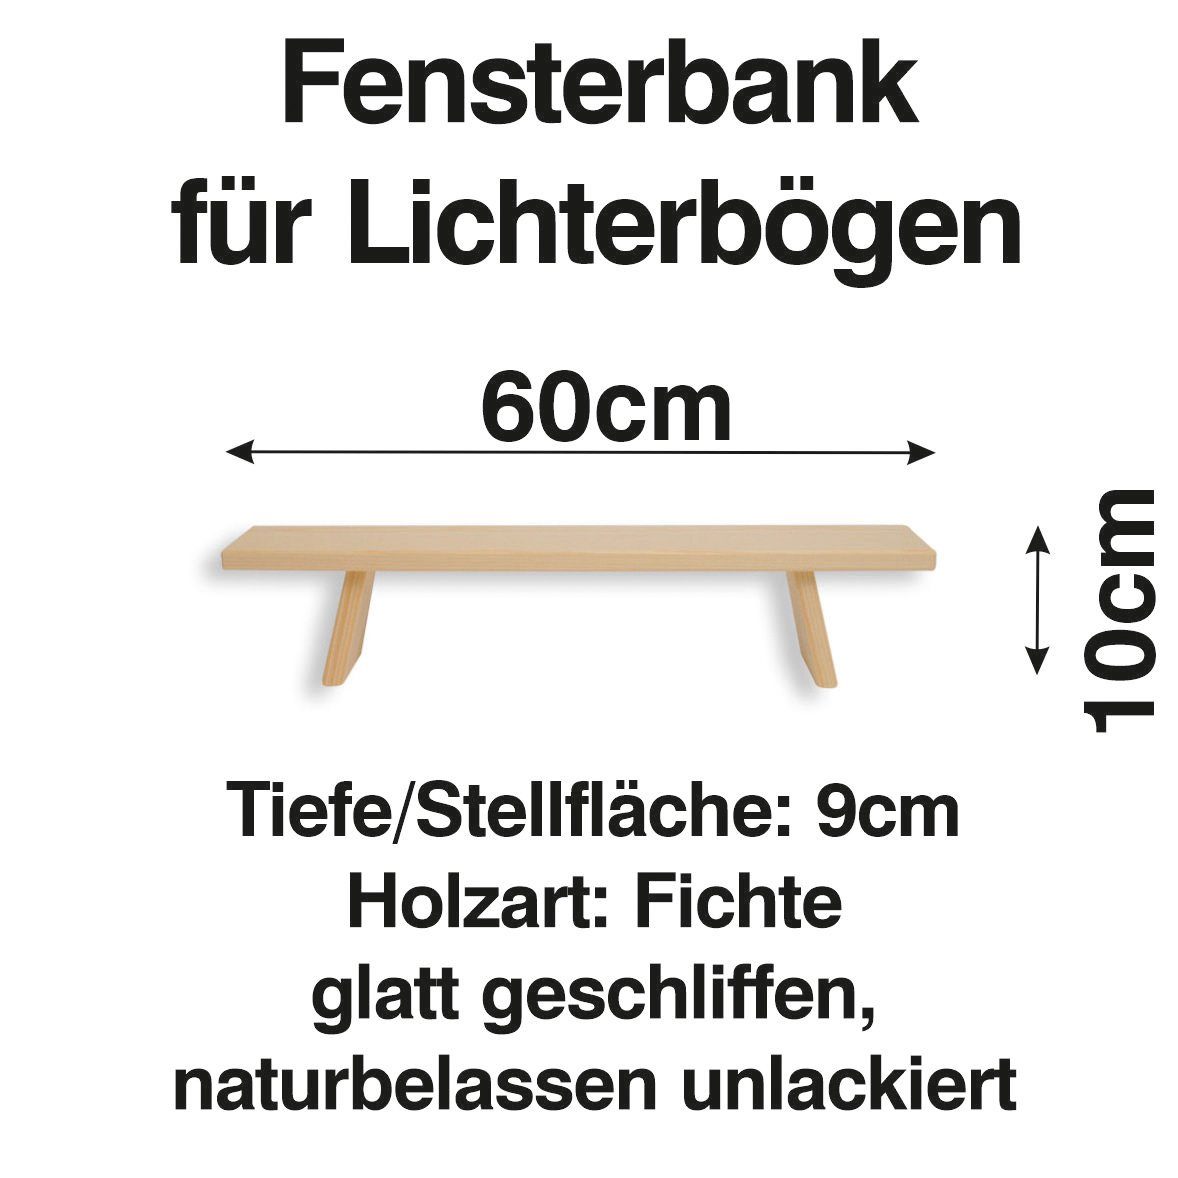 Schenk Holzkunst Schwibbogen-Fensterbank Schwibbogen cm Fenst 60 Lichterbogen Bank Erhöhung